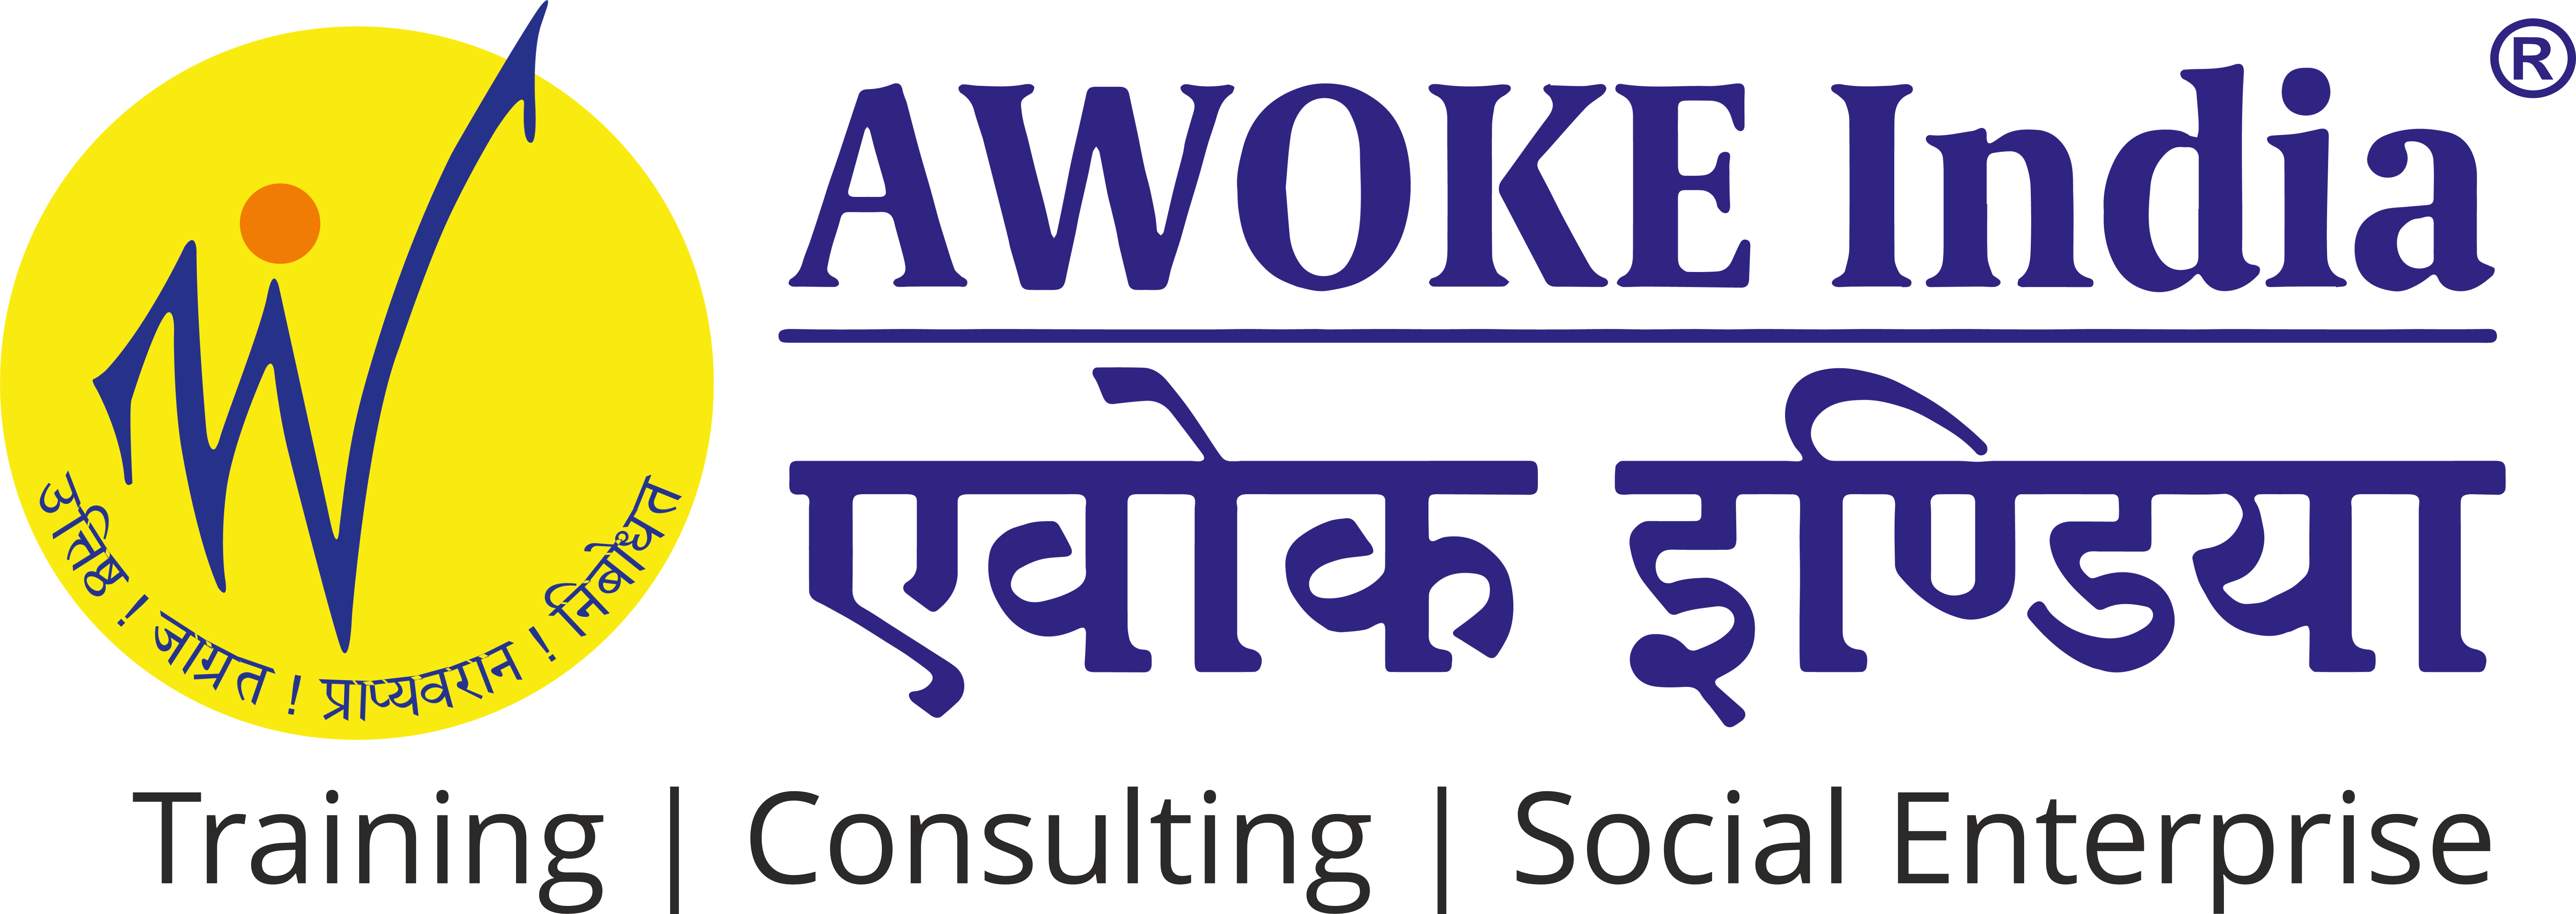 AWOKE India